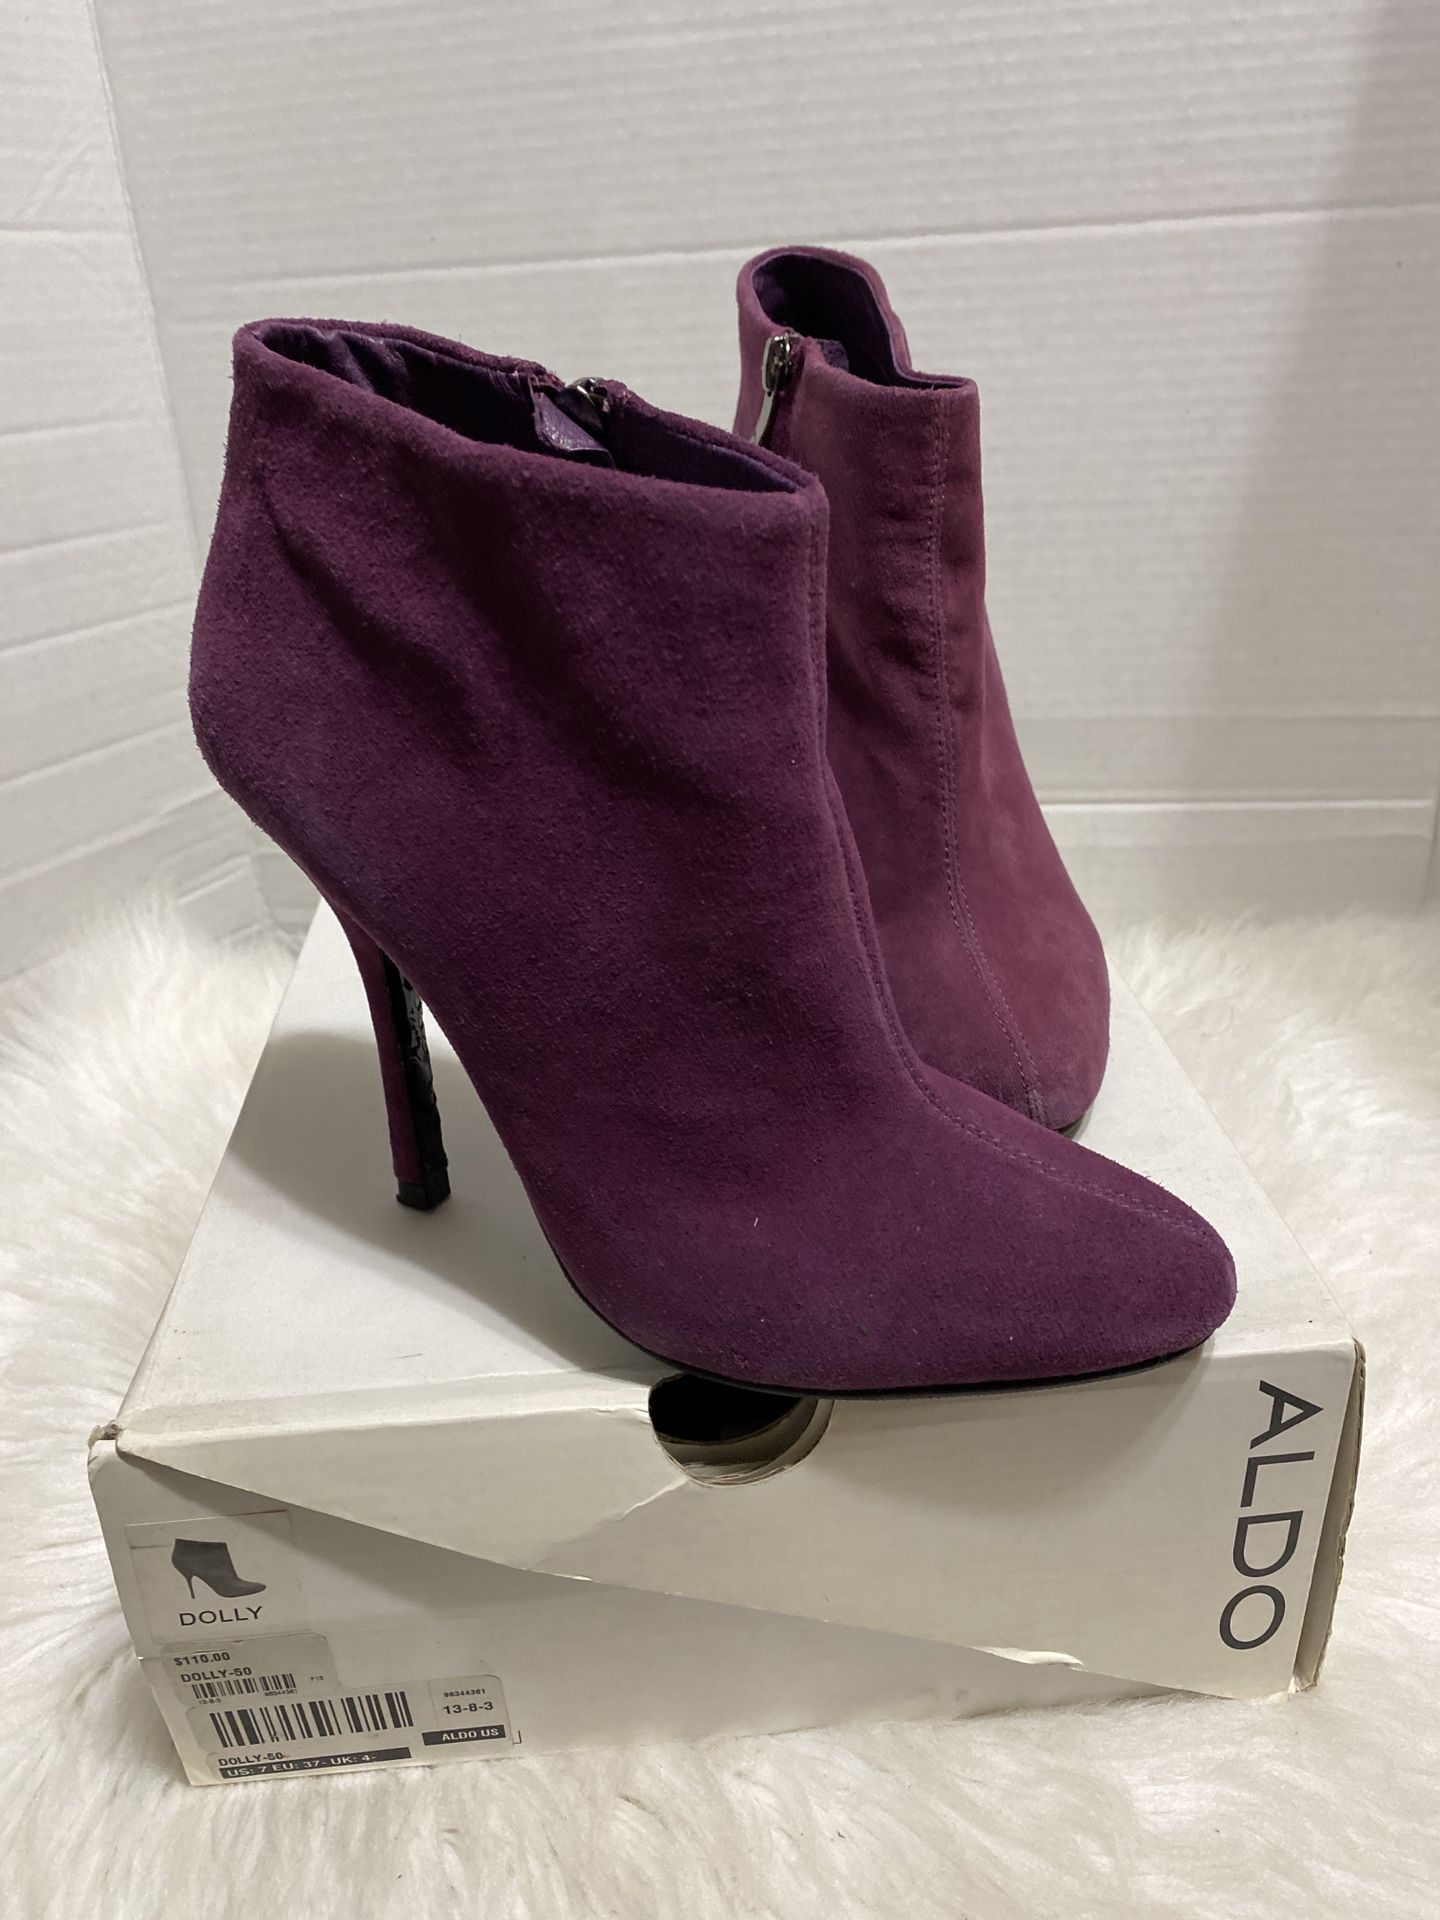 Aldo Women's Purple Dolly Suede Side Zip High Heel Ankle Boots Size 6.5